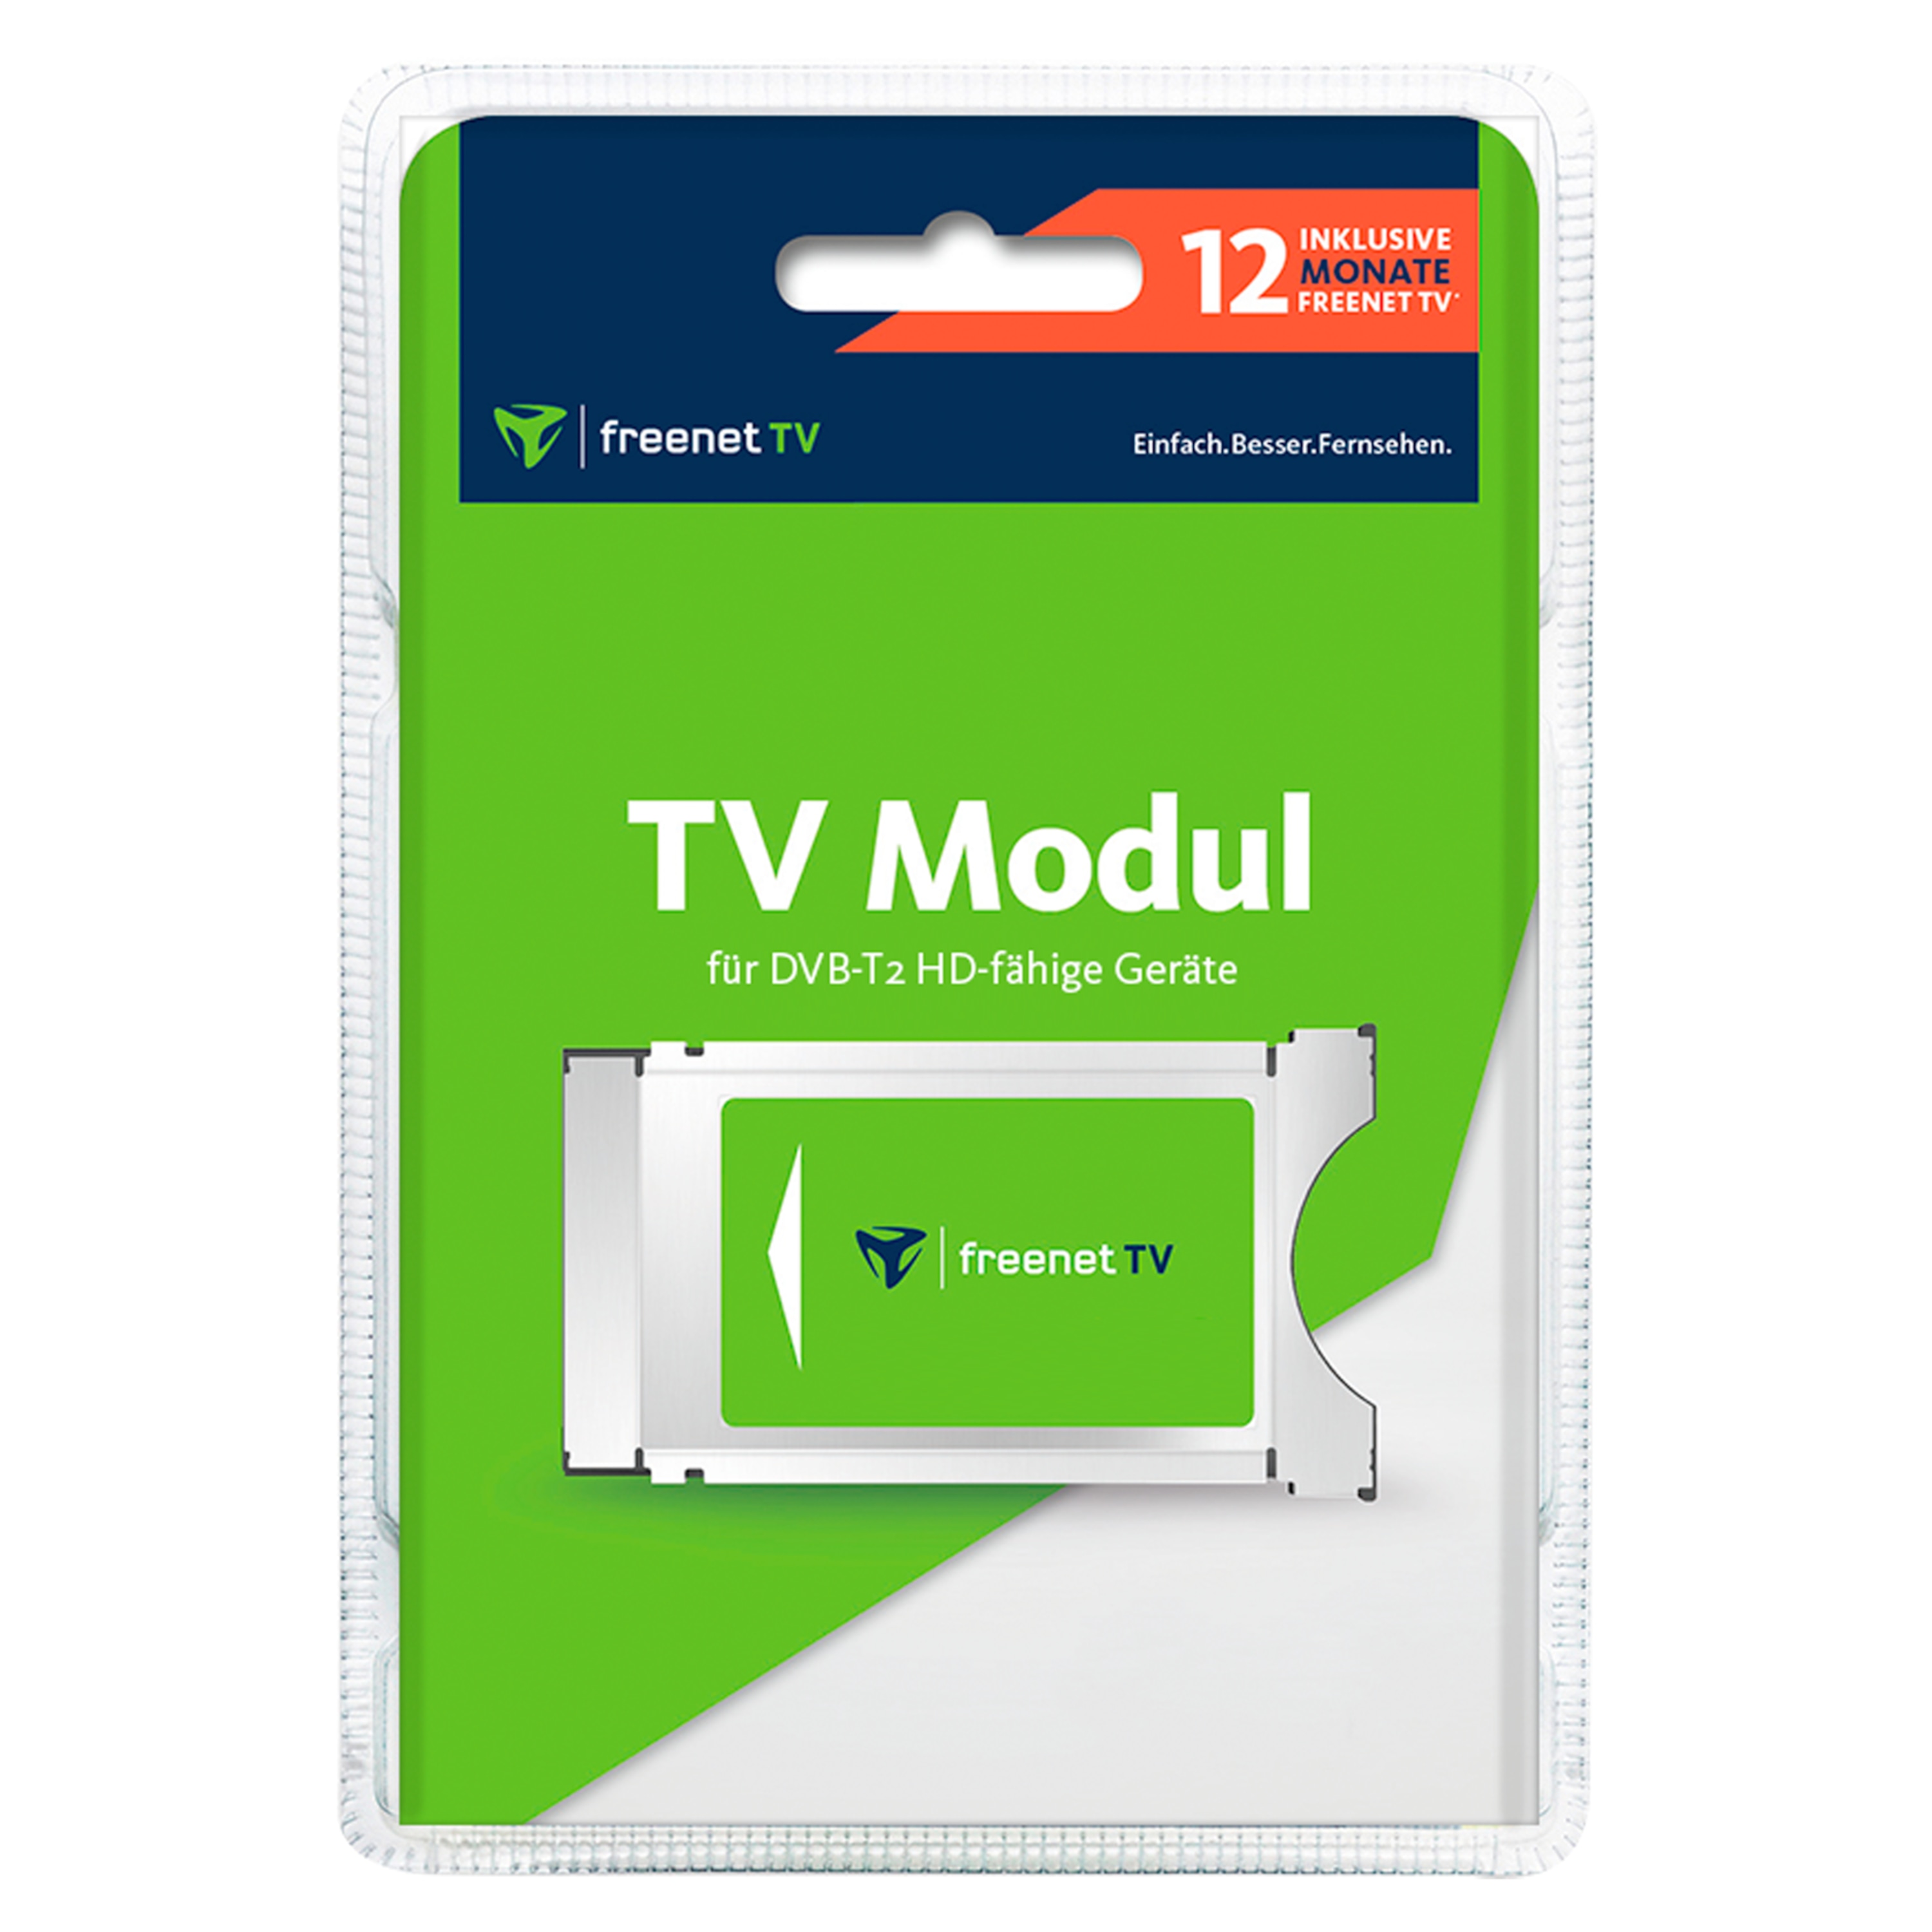 TELESTAR freenet TV CI+ Modul, für DVB-T2 HD und 4K/UHD geeignete Geräte, ermöglicht den Empfang via DVB-T2 HD ausgestrahlter verschlüsselter TV-Programme im Rahmen des freenet TV Angebotes, inkl. 12 Monate freenet TV